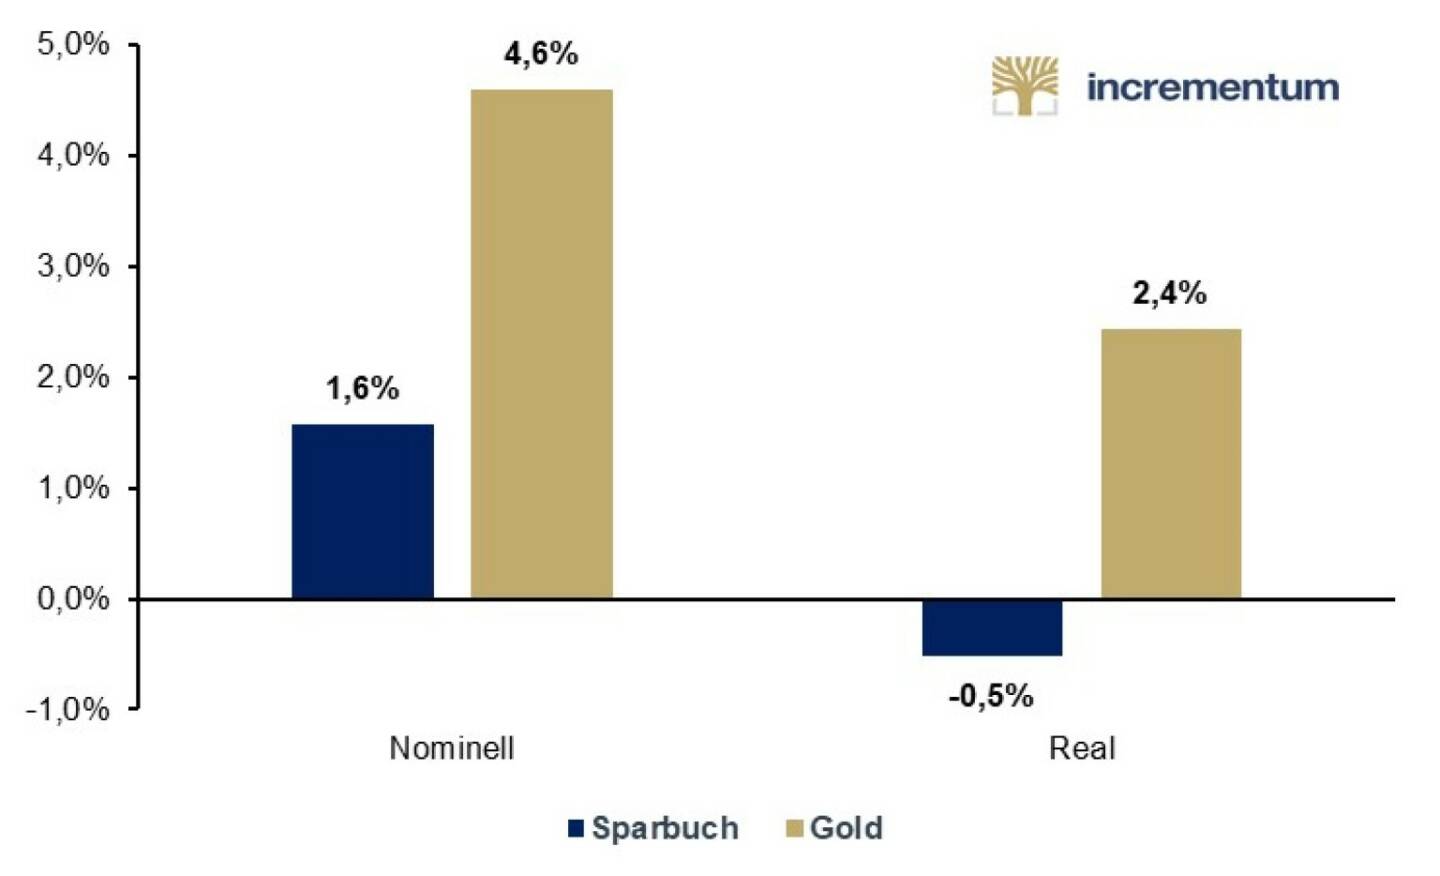 Münze Österreich AG: Als vor 30 Jahren im Oktober 1989 die Goldmünze Wiener Philharmoniker von der Münze Österreich aufgelegt wurde, betrugen die sogenannten Sparbuchzinsen im Durchschnitt noch knapp 3 Prozent. Wer heute als Sparer sein Geld auf das Sparbuch legt, kann in Zeiten der Nullzinspolitik der EZB noch knapp 0,2 Prozent Zinsen von seiner Bank erwarten. Anders beim Gold: Der Goldpreis, an den auch die Wertentwicklung der Goldmünze Wiener Philharmoniker gekoppelt ist, hat sich seit 1989 um rund 280 Prozent erhöht. im Bild: Jährlicher Ertrag Sparbuch und Gold, nominell und real, 1989-2019, Quellen: statista.de, fxtop.com (bis 12/98), Federal Reserve St. Louis (ab 01/99), Incrementum AG. Credit: Münze Österreich